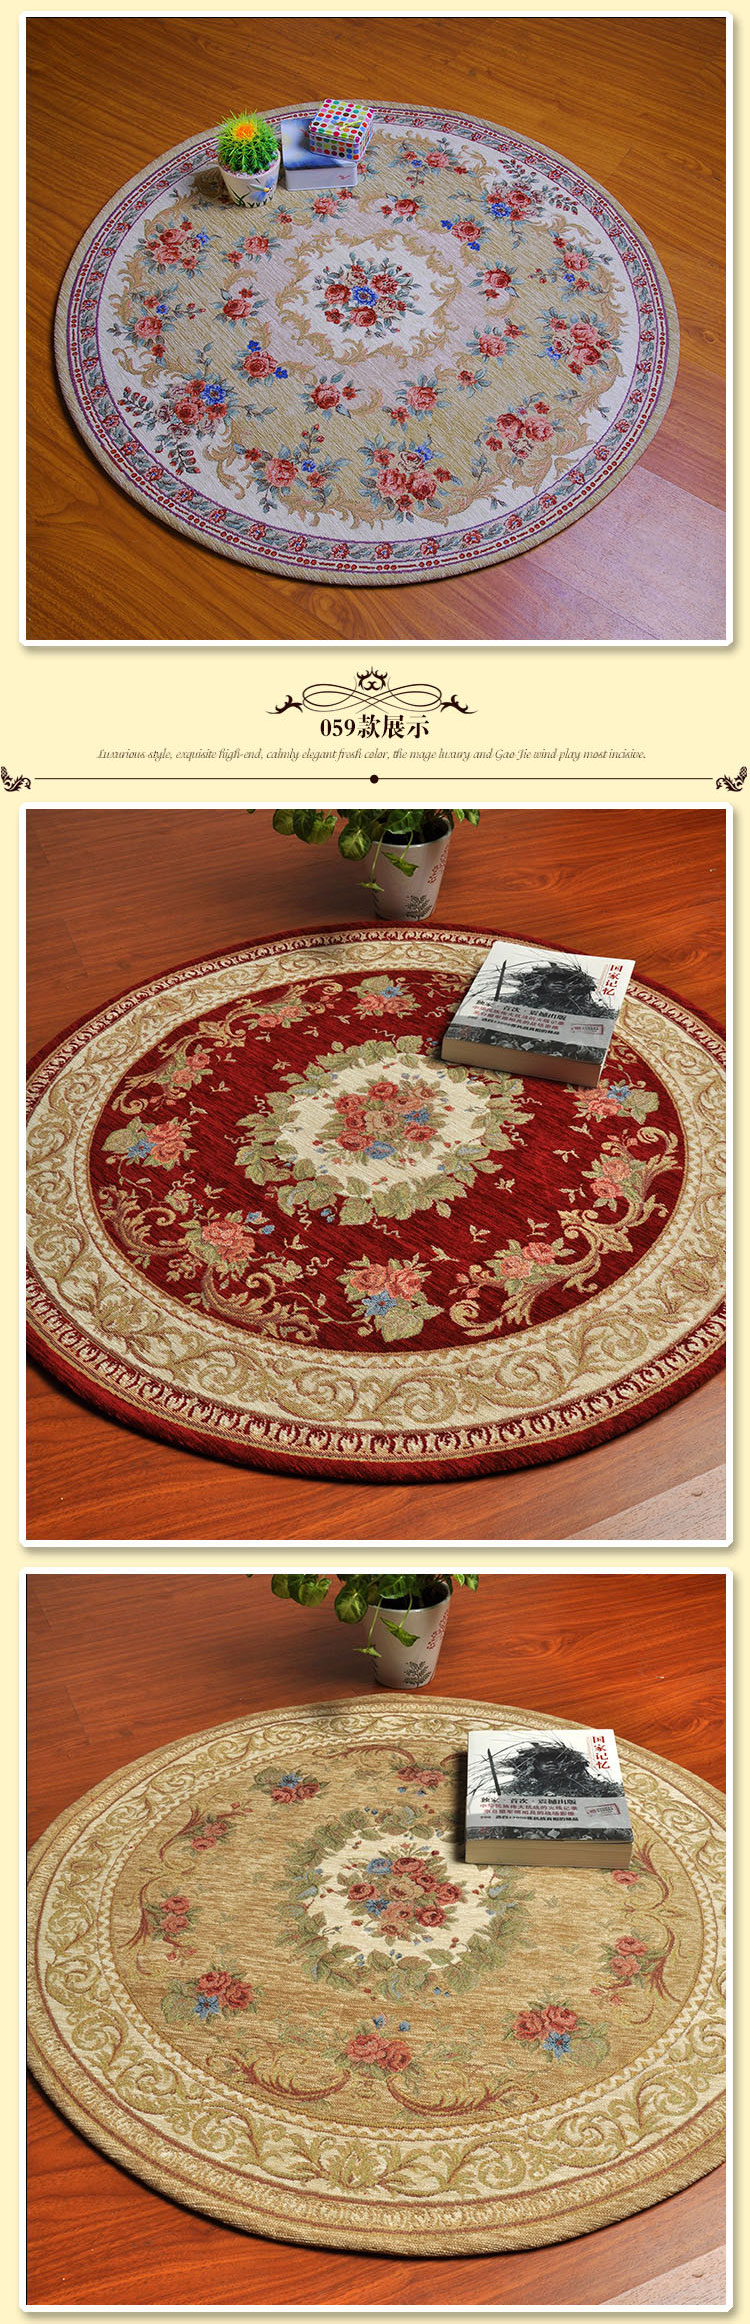 嘉博朗 圆形地毯 茶几卧室吸水防滑地毯可机洗地毯 059红色 90cm圆